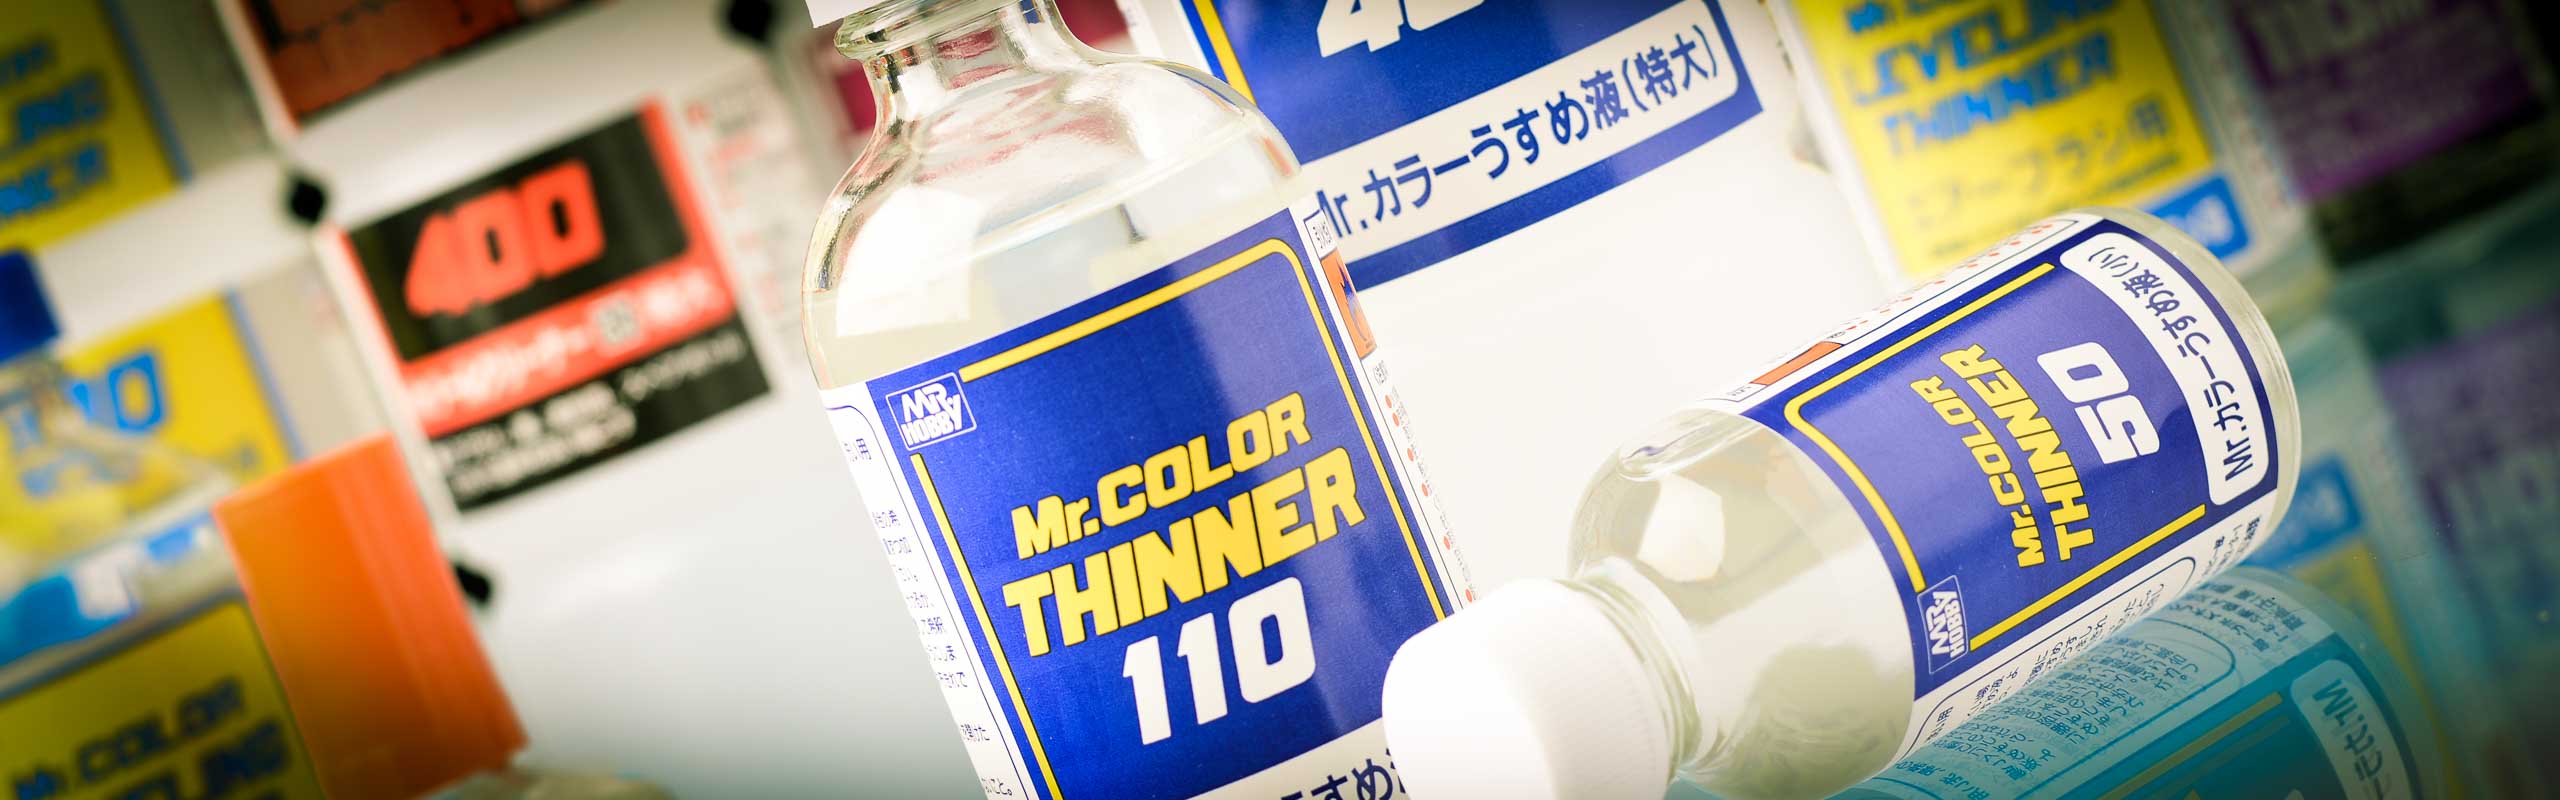 Mr. Color Leveling Thinner 110ml Glass Bottles (12/Bx) 